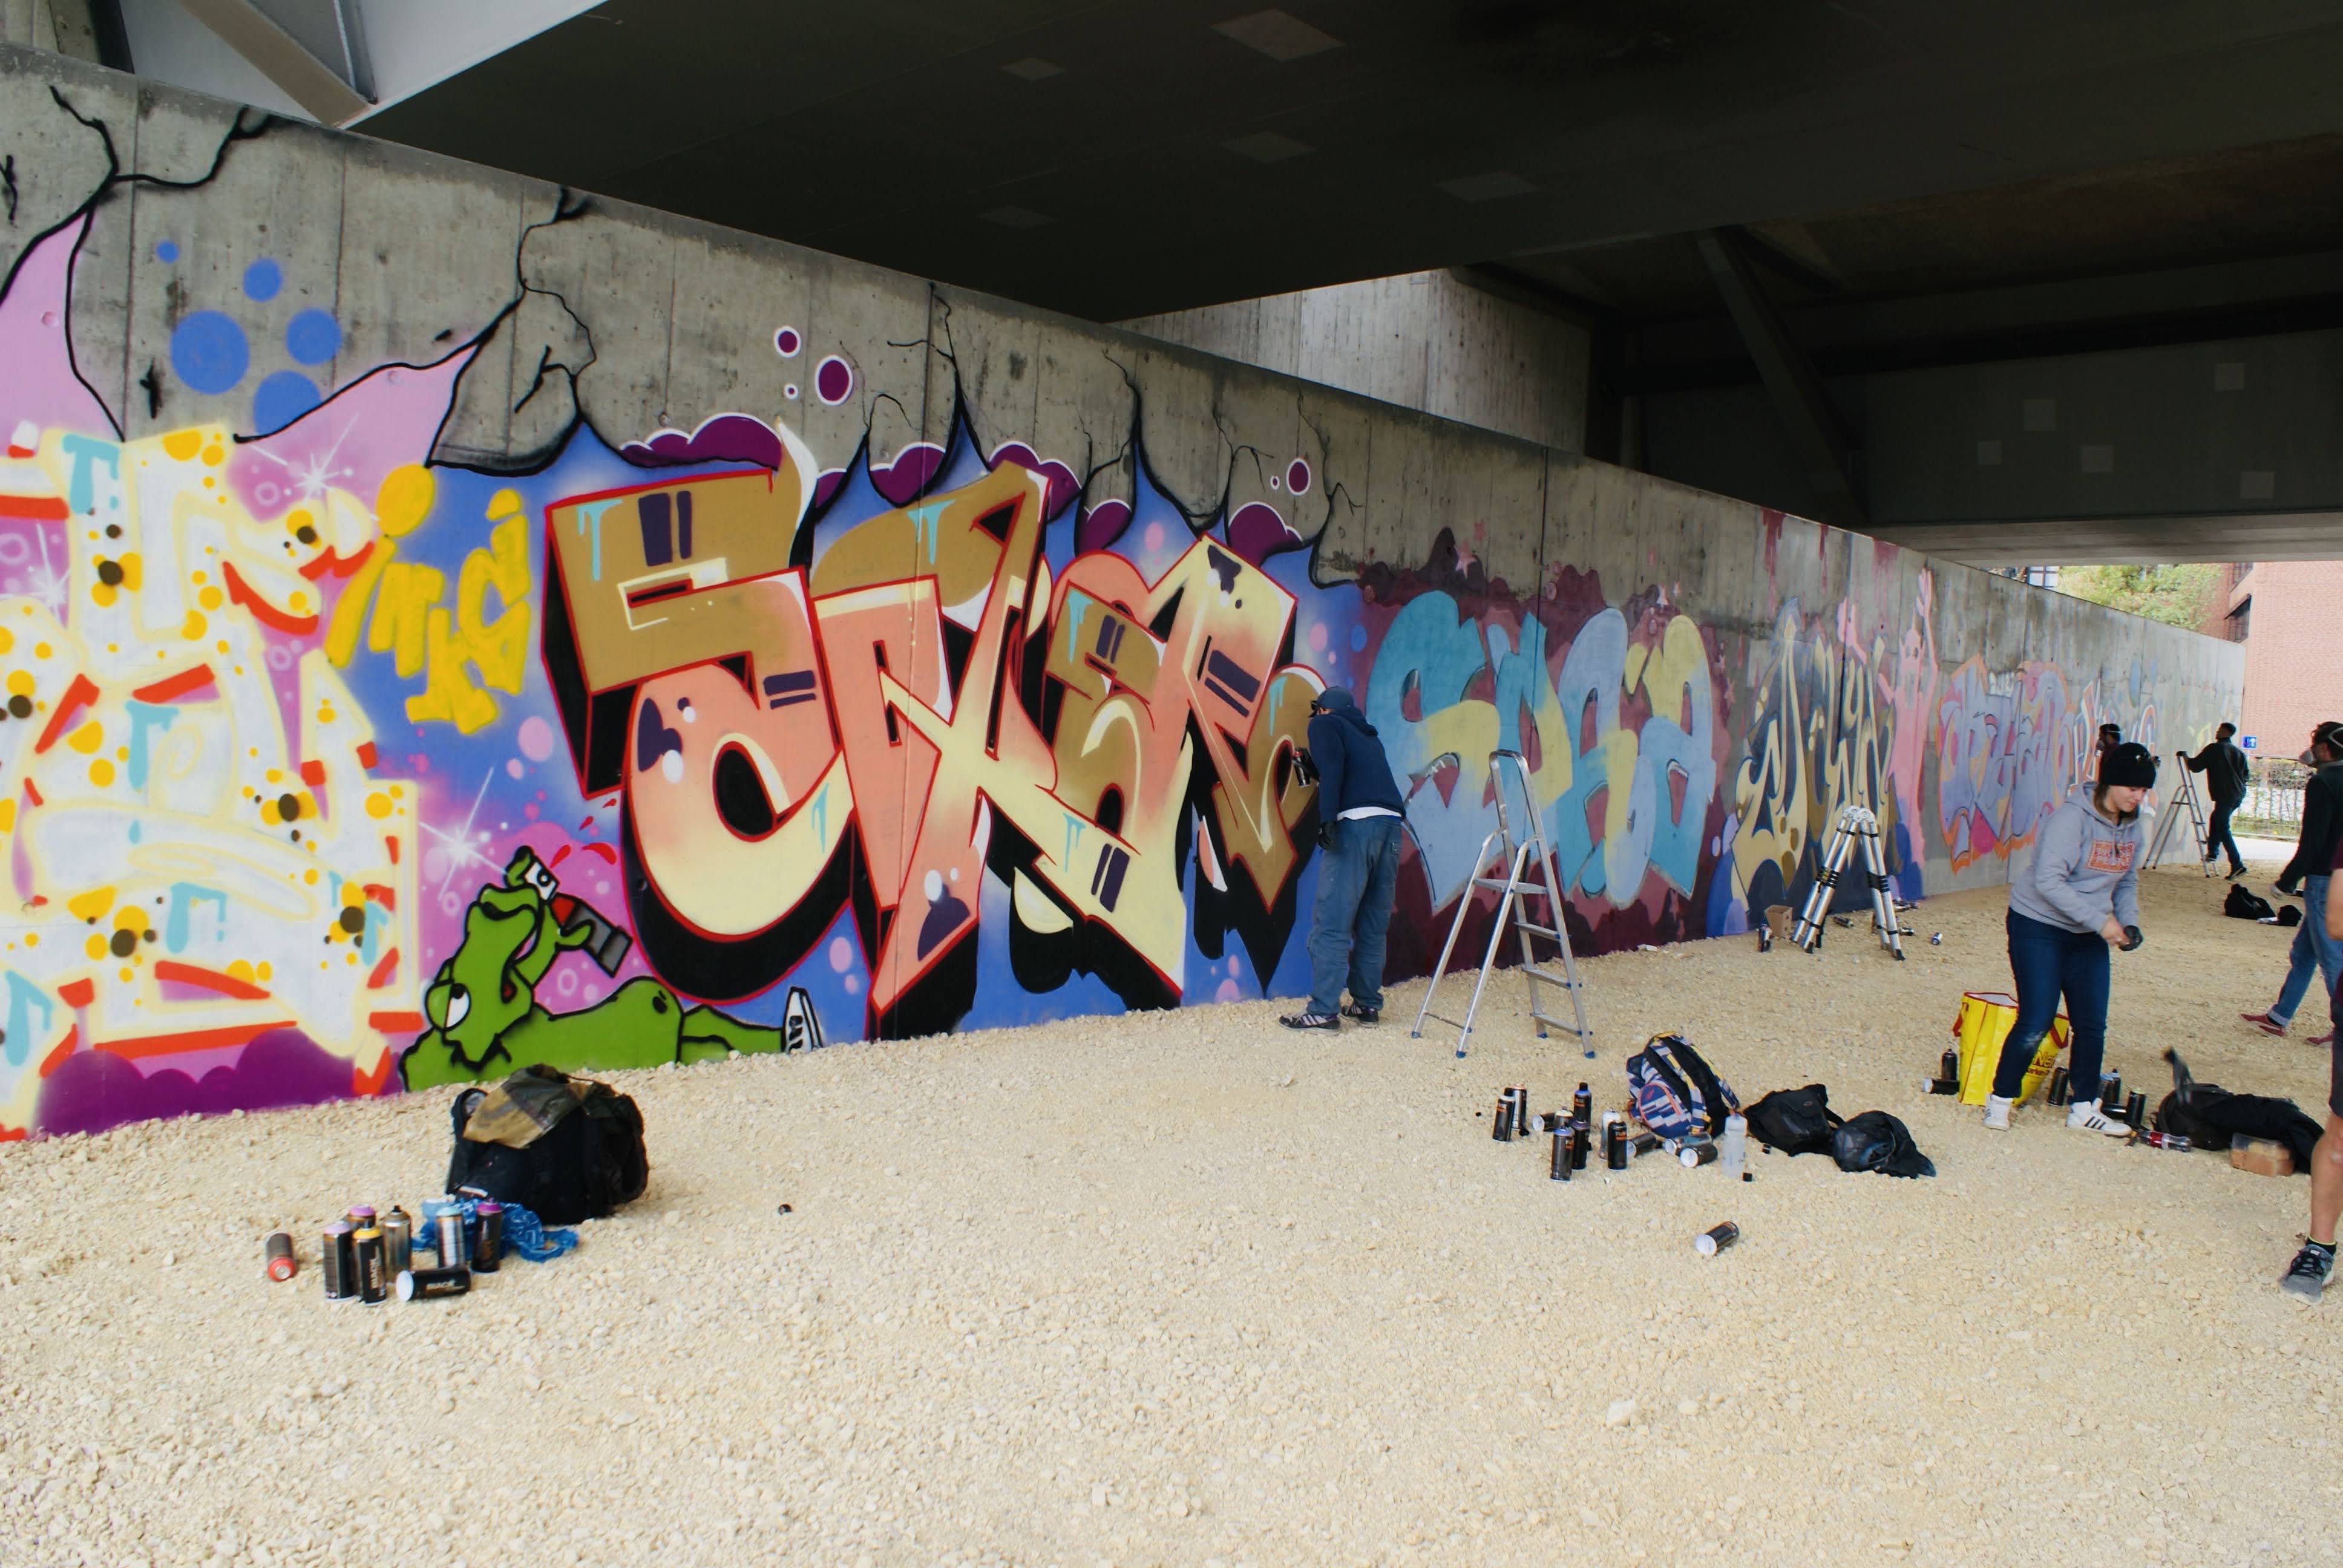 Graffiti an der HWS Wand. Die graue Betonwand mit verschieden bunten Schriftzeichen, vier Graffiti Künstler und deren Utensilien und Staffeleien.